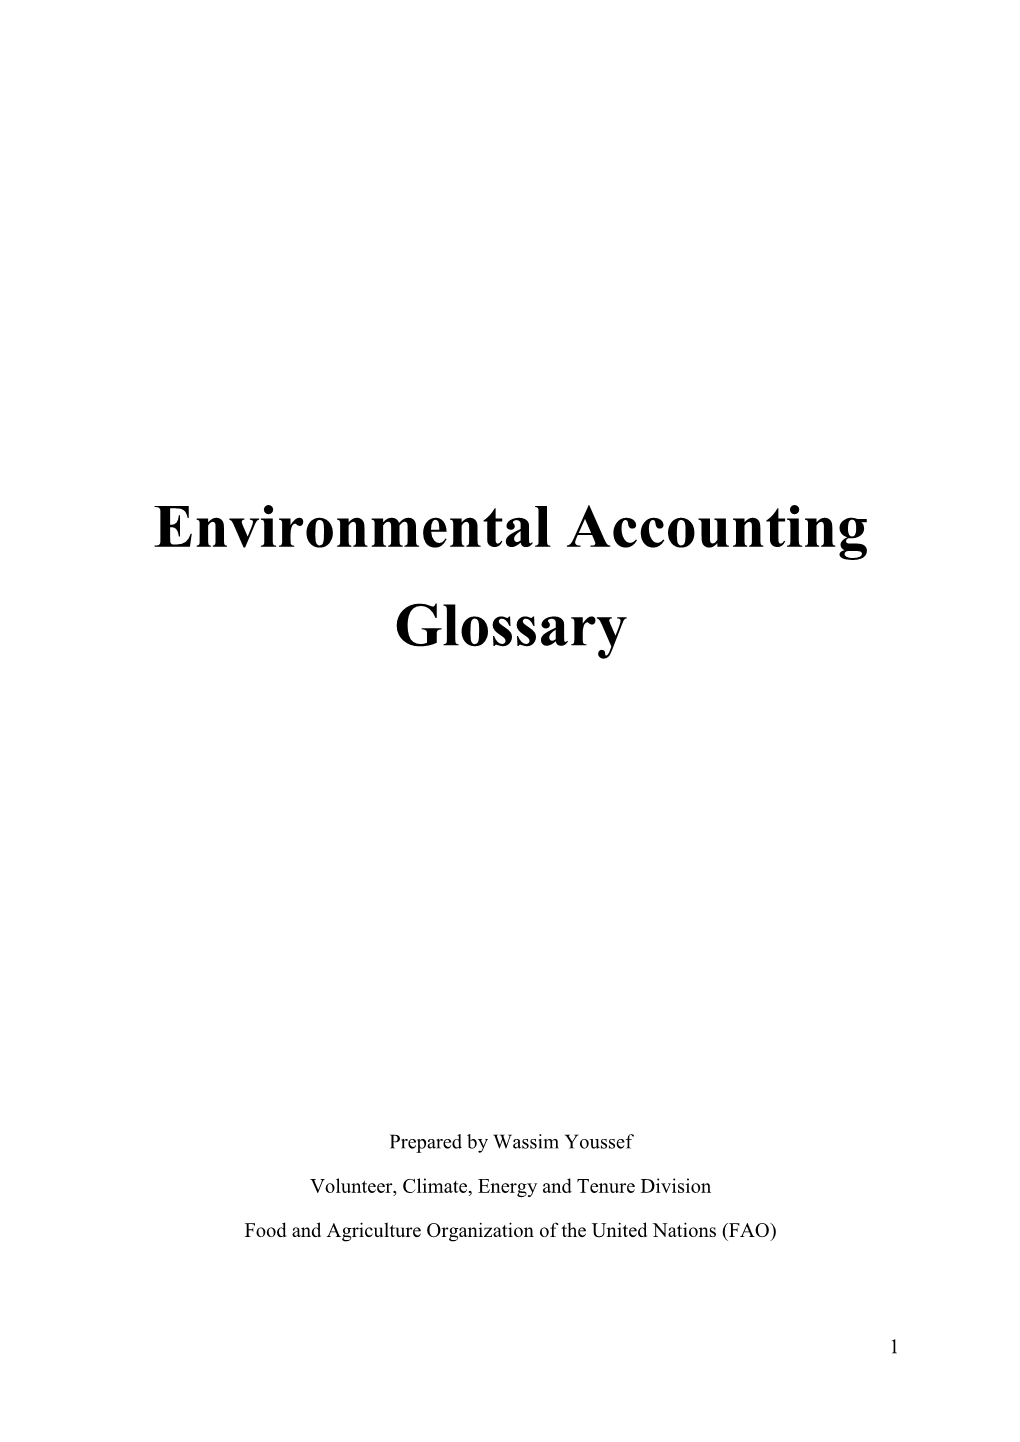 Environmental Accounting Glossary